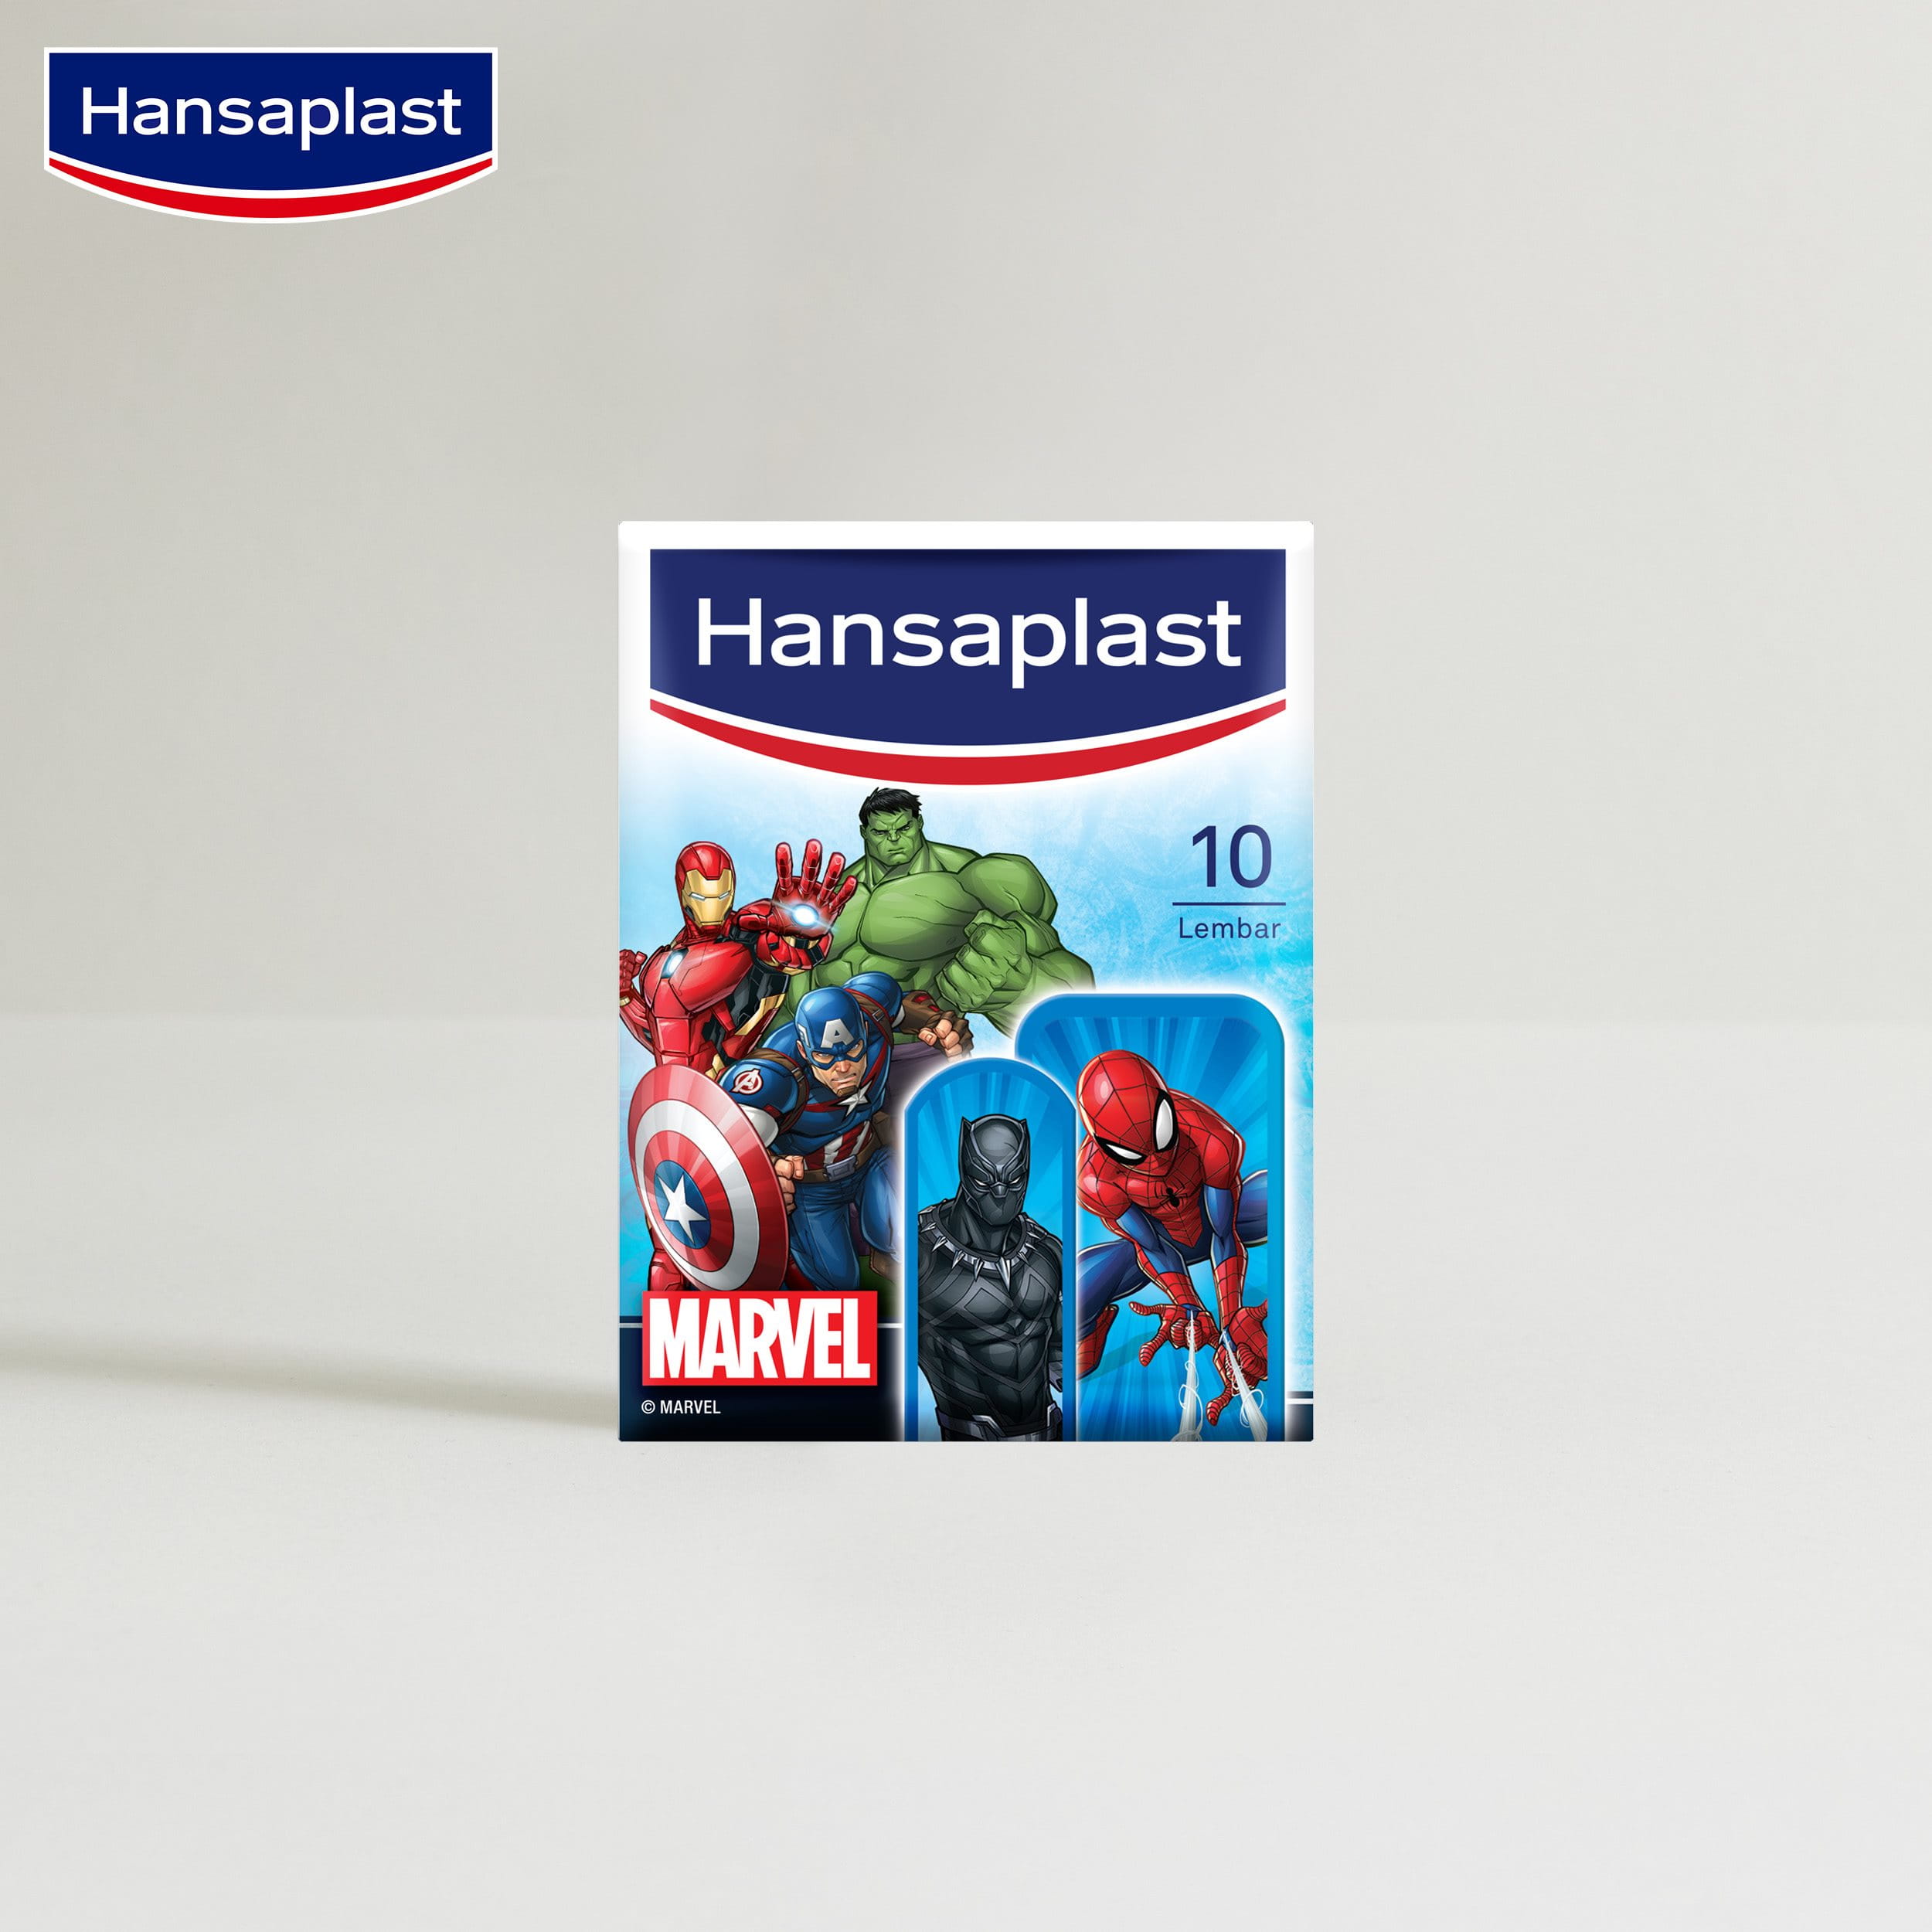 Hansaplast Marvel Avenger